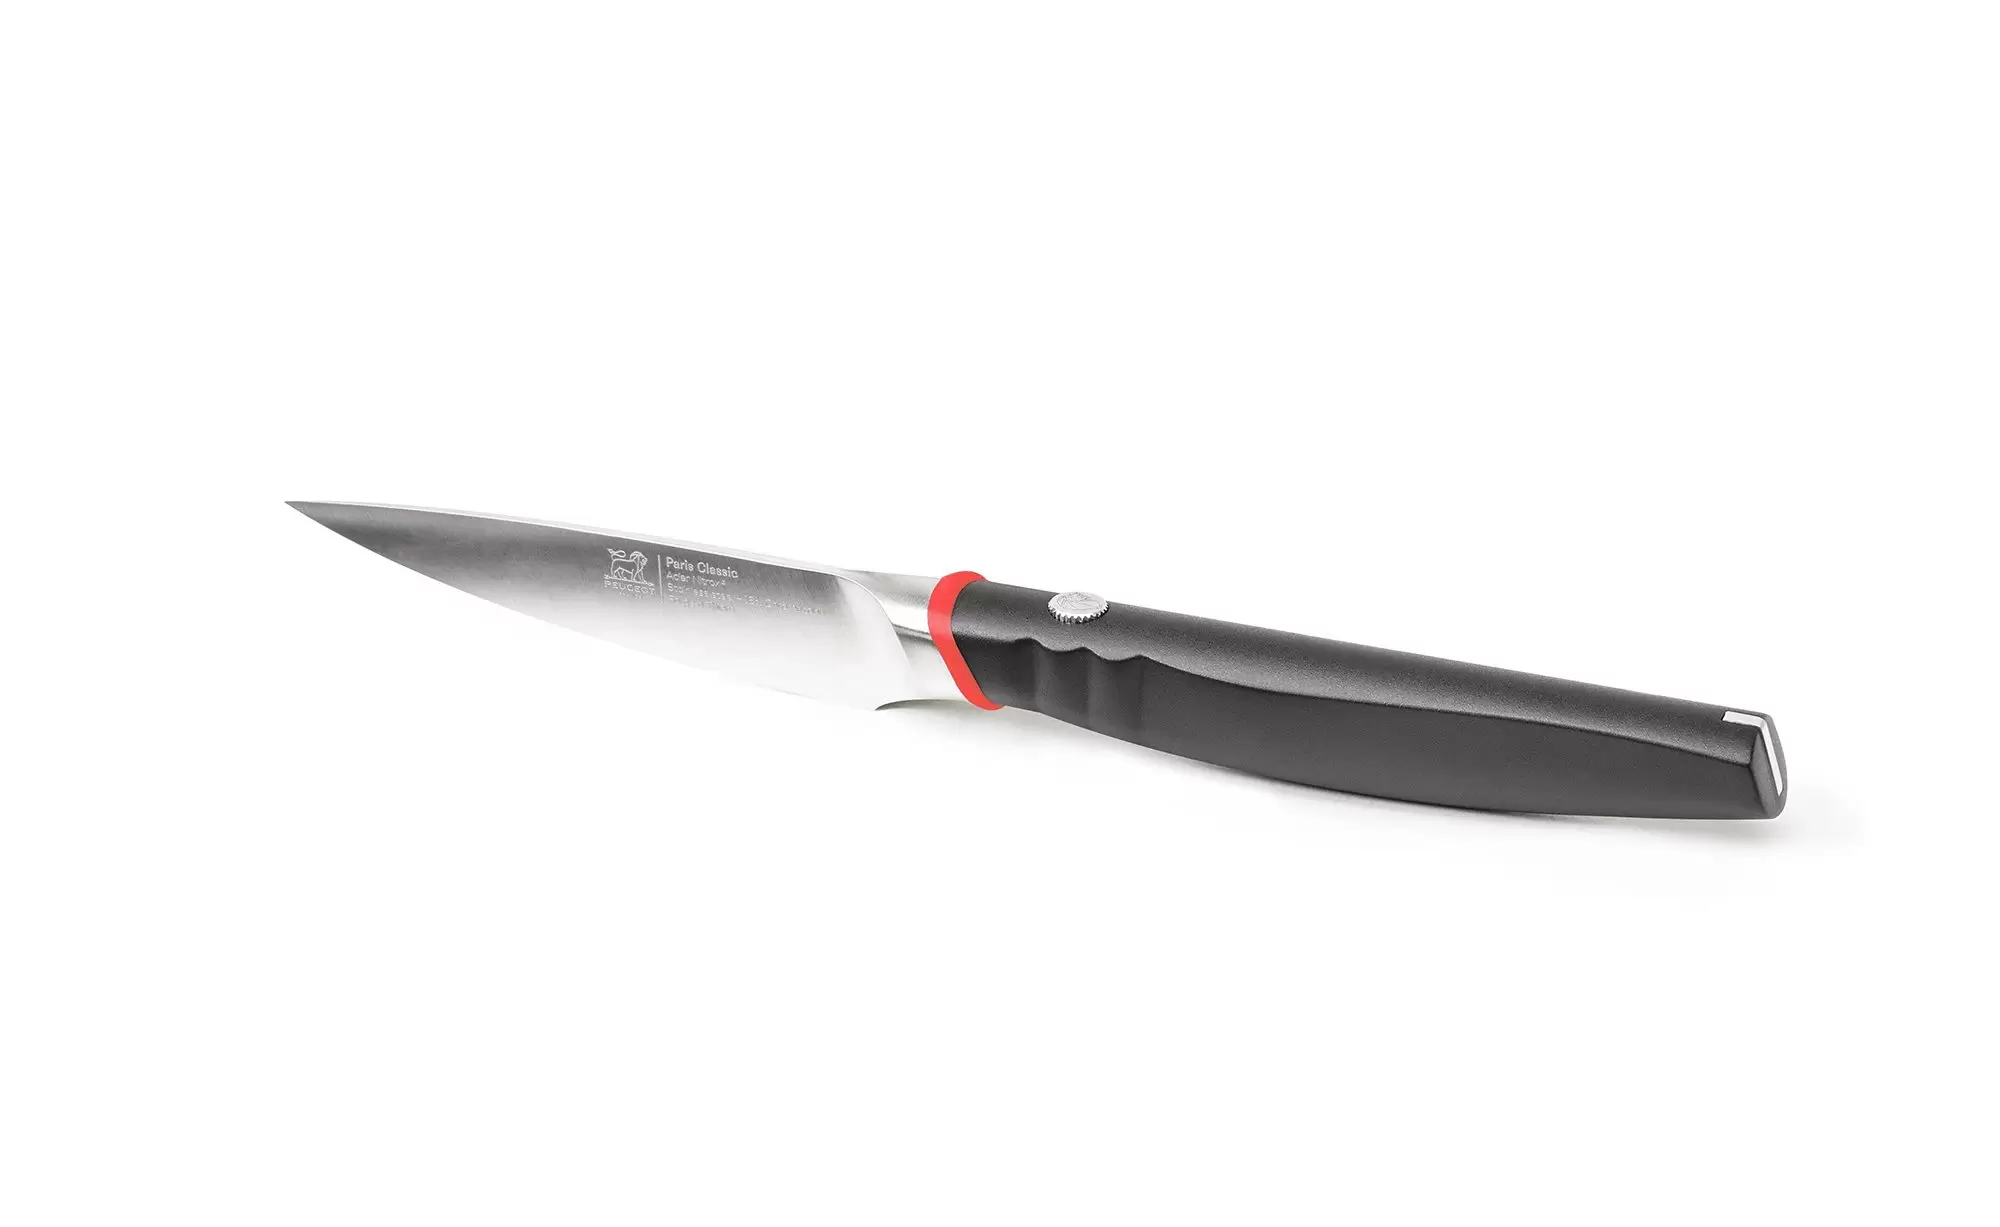 Нож для овощей Paris Classic  Peugeot 9 см